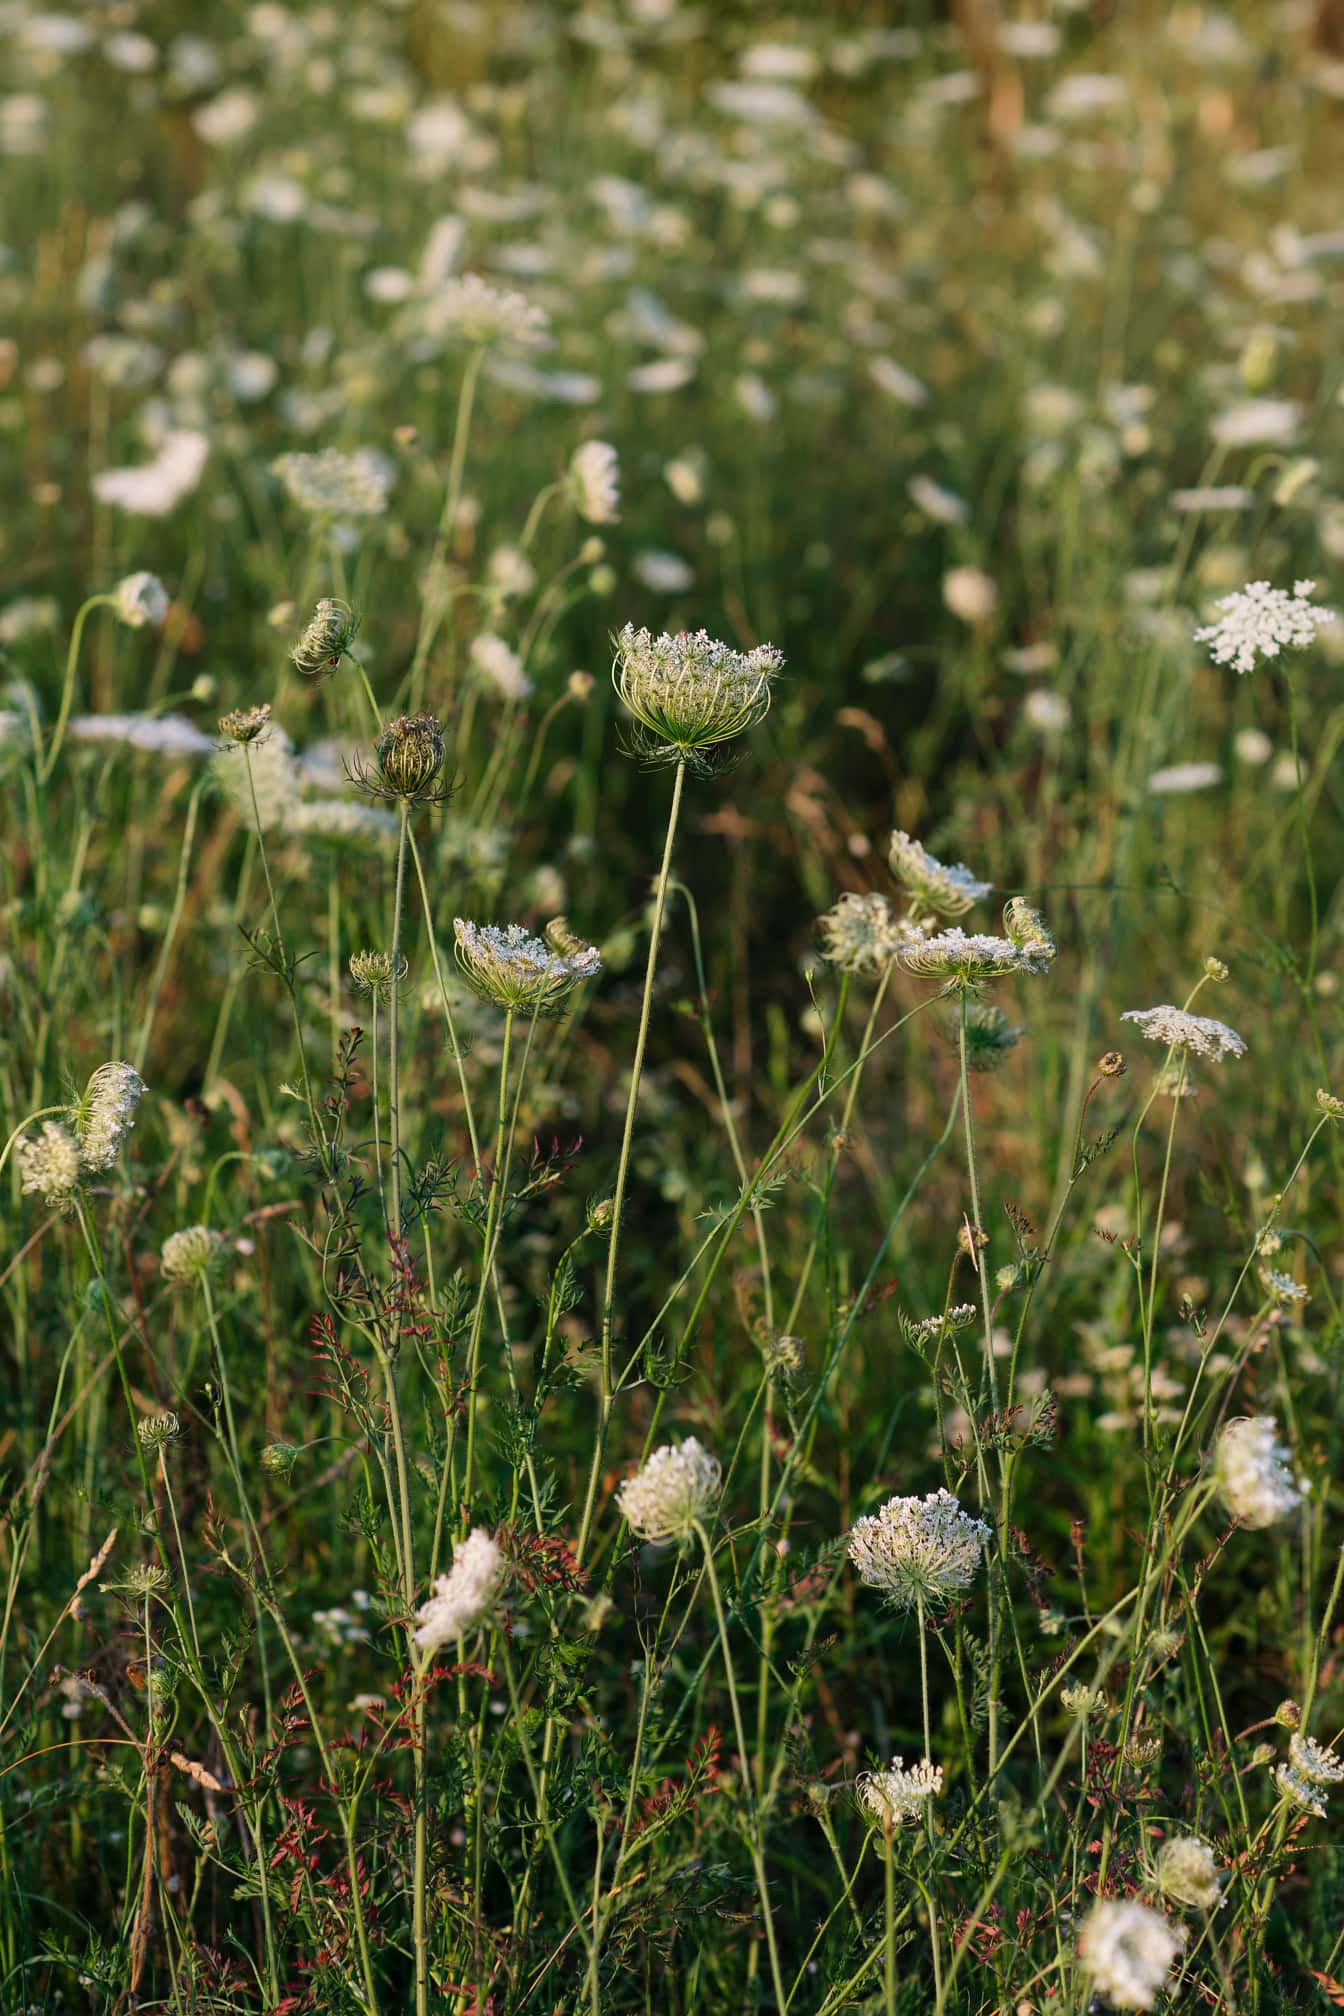 ดอกไม้ป่าดอกไม้สีขาวแครอทป่า (Daucus carota) ในทุ่งหญ้าในฤดูใบไม้ผลิ